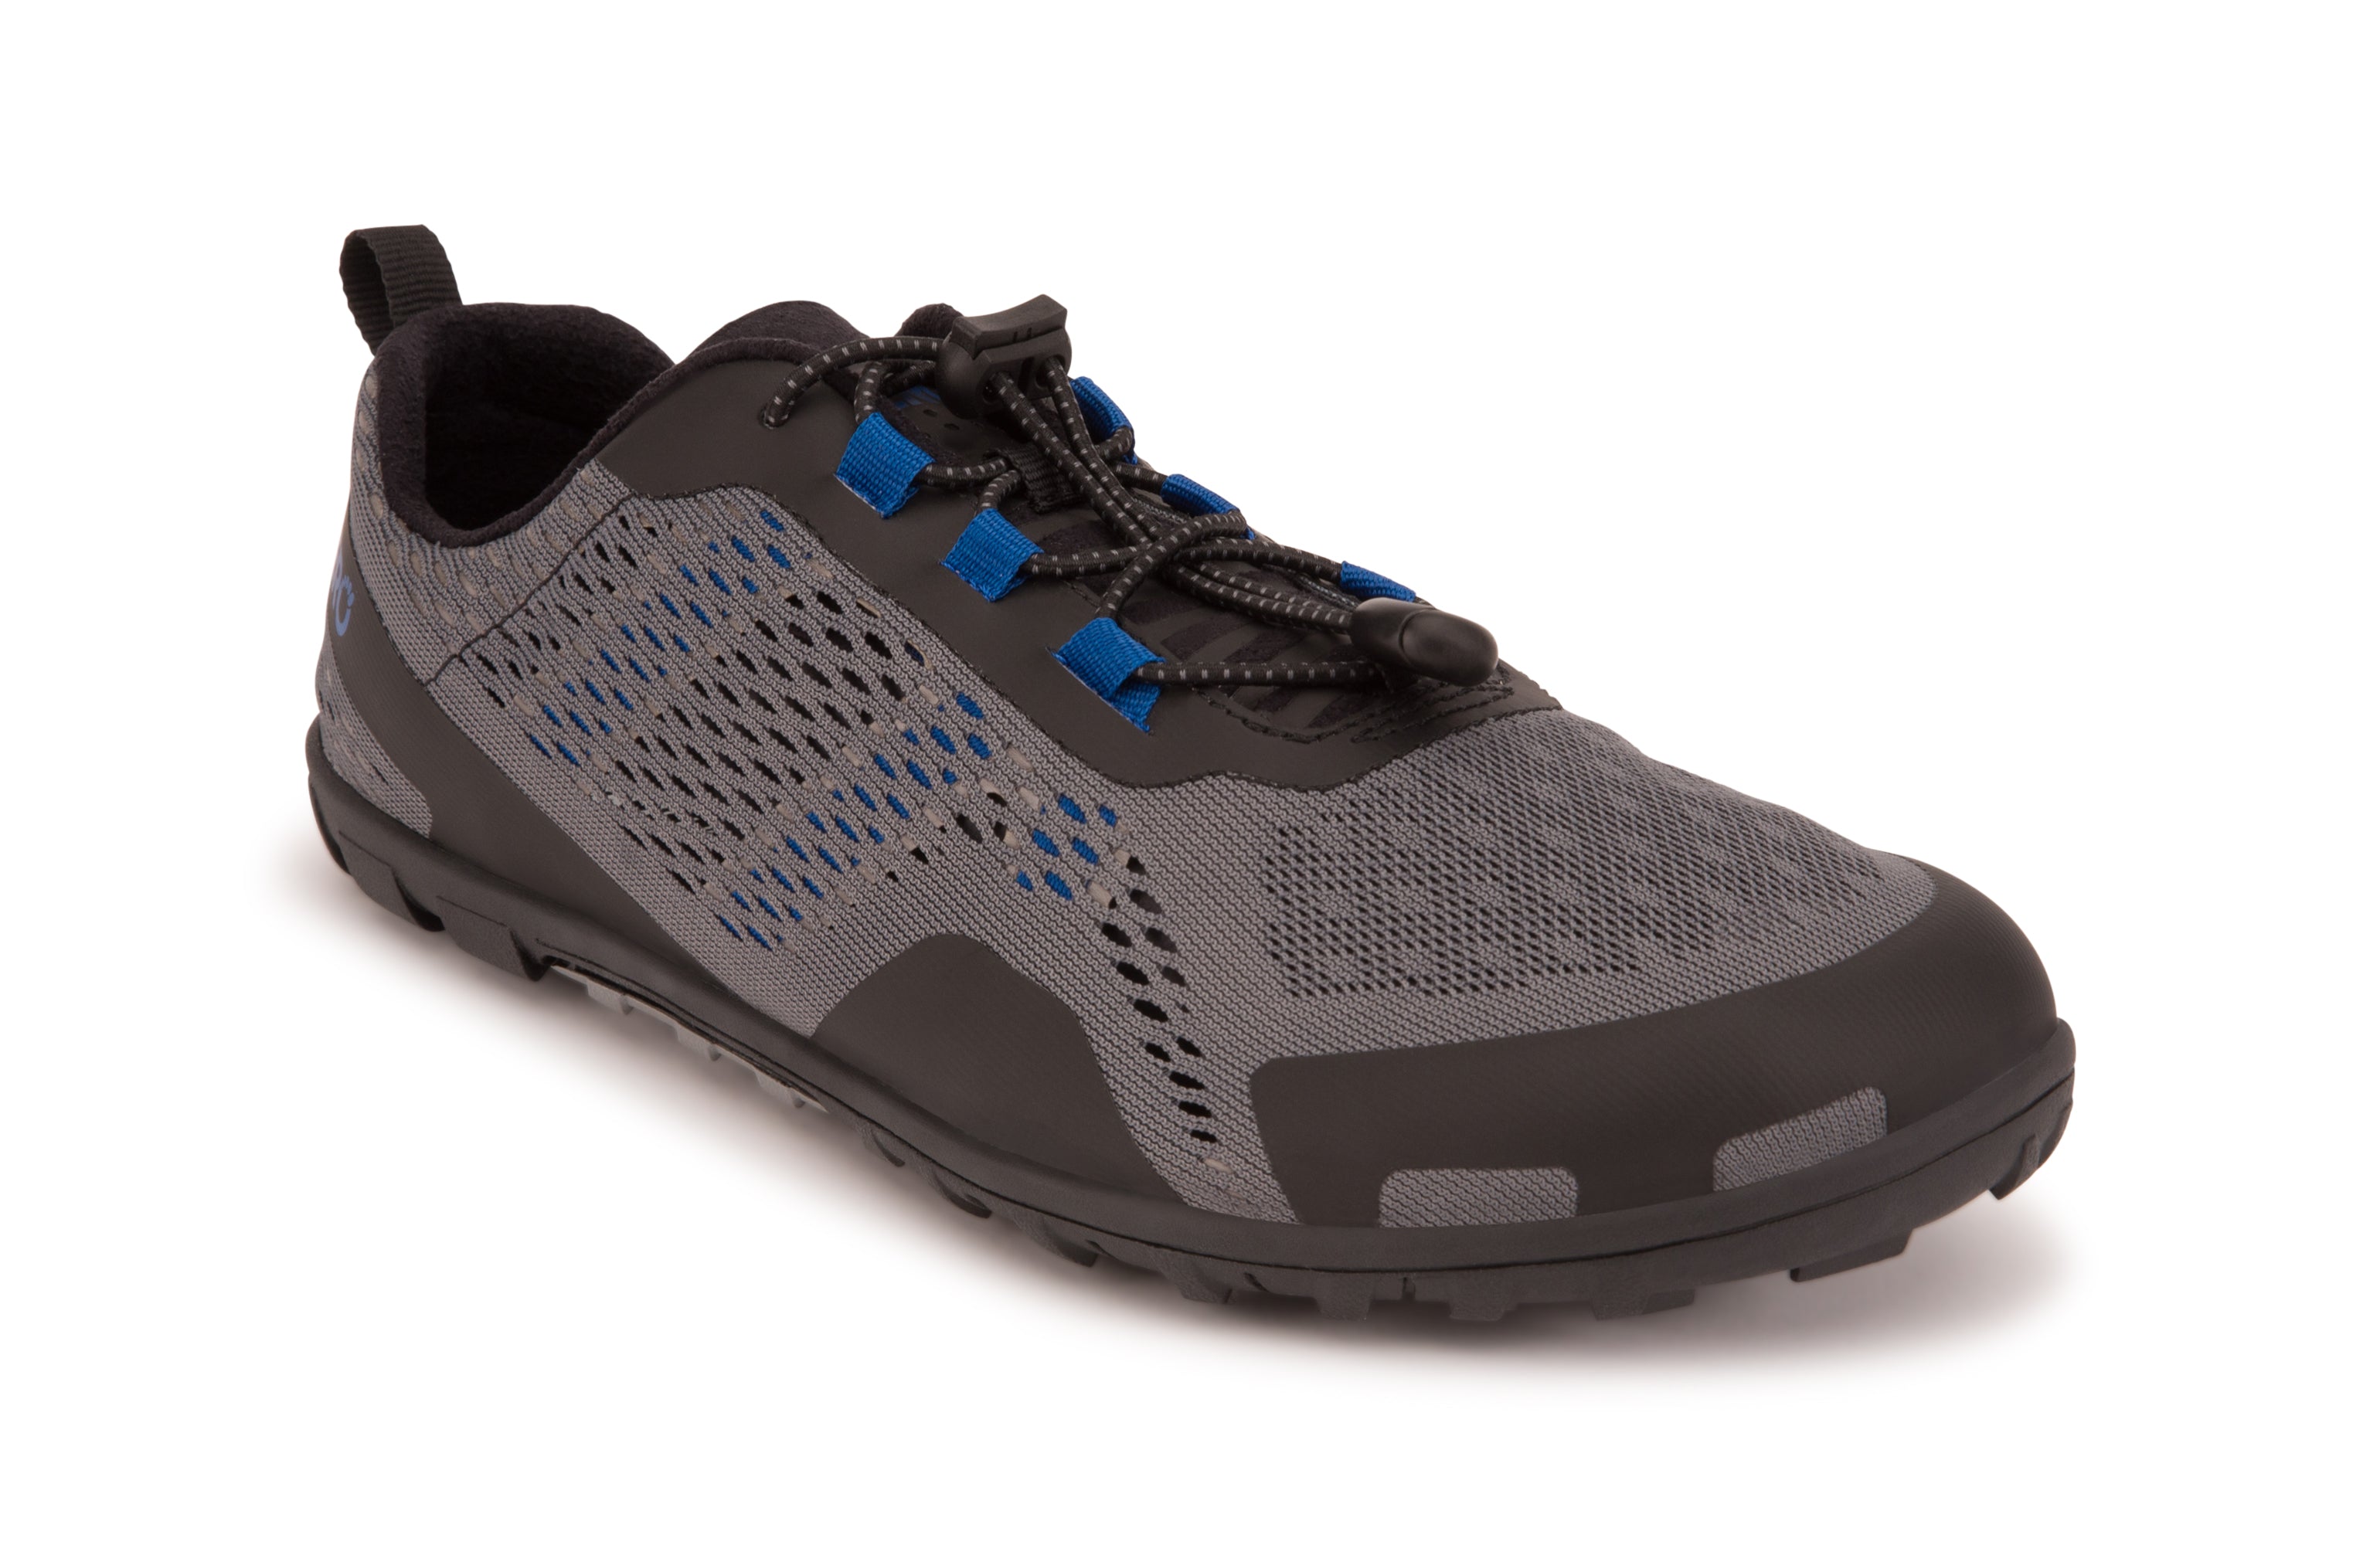 Xero Shoes Aqua X Sport barfods vand træningssko til mænd i farven steel gray / blue, vinklet